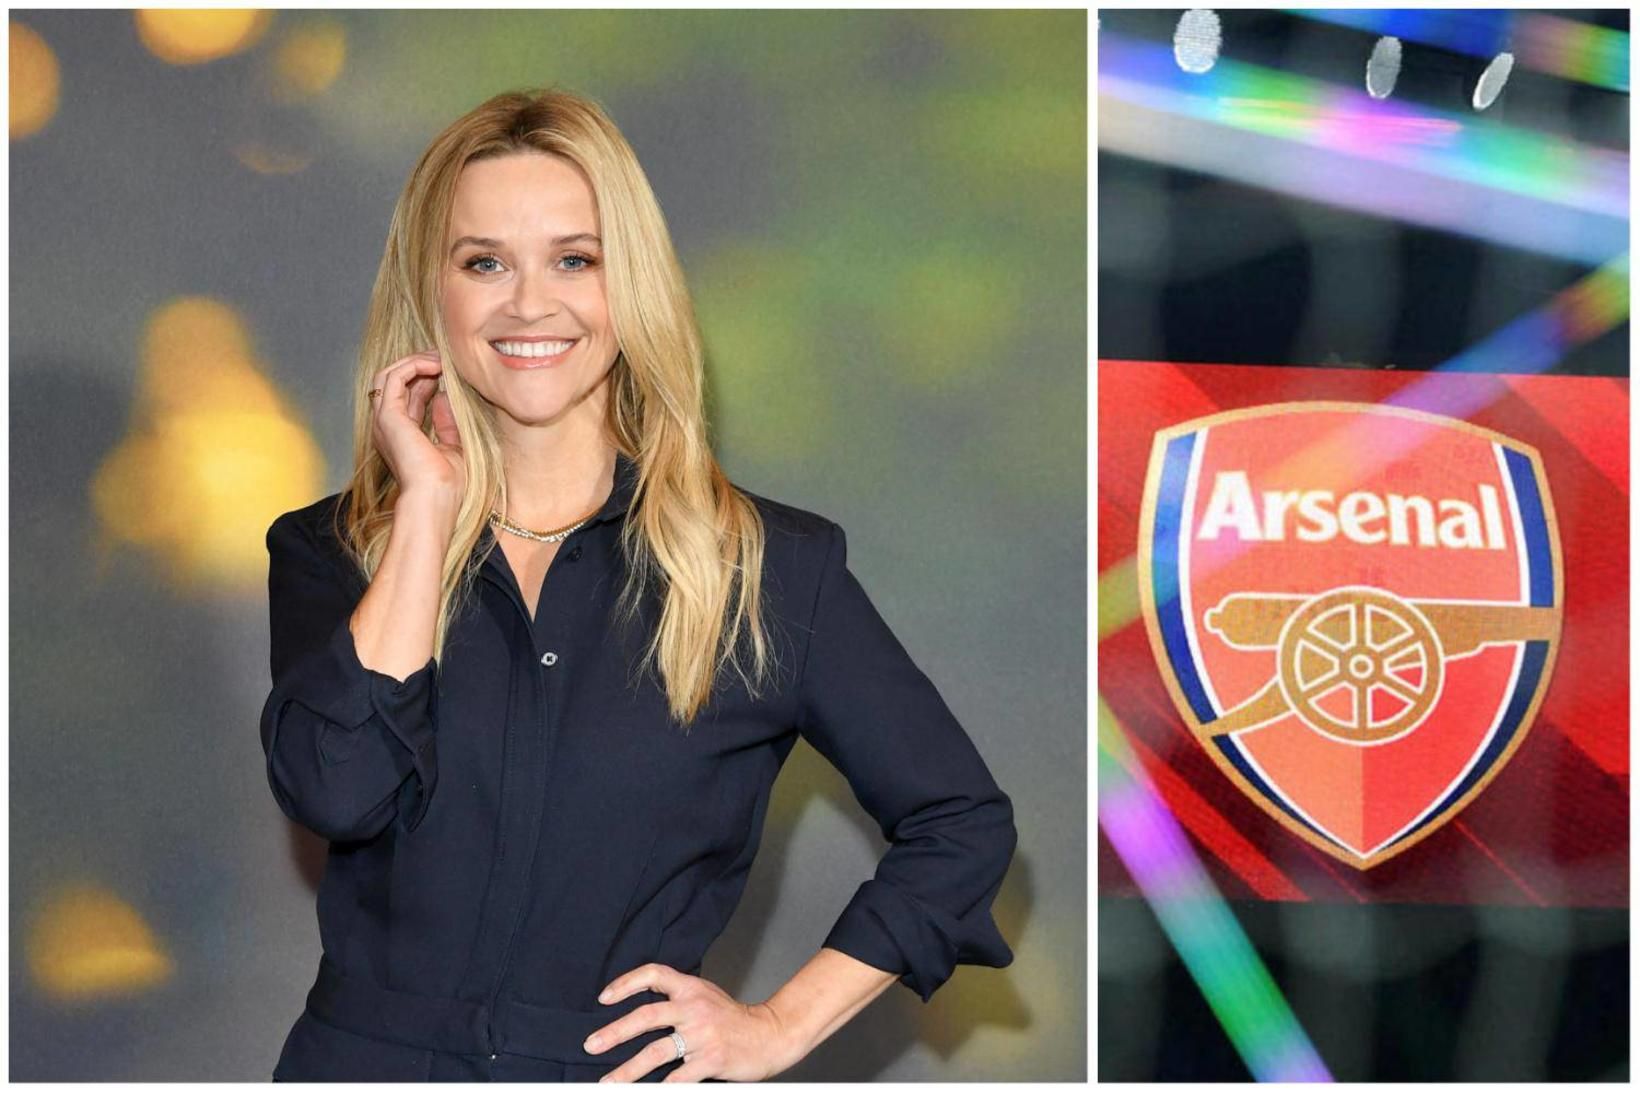 Leikkonan Reese Witherspoon íhugar að fjárfesta í knattspyrnuliðinu Arsenal.